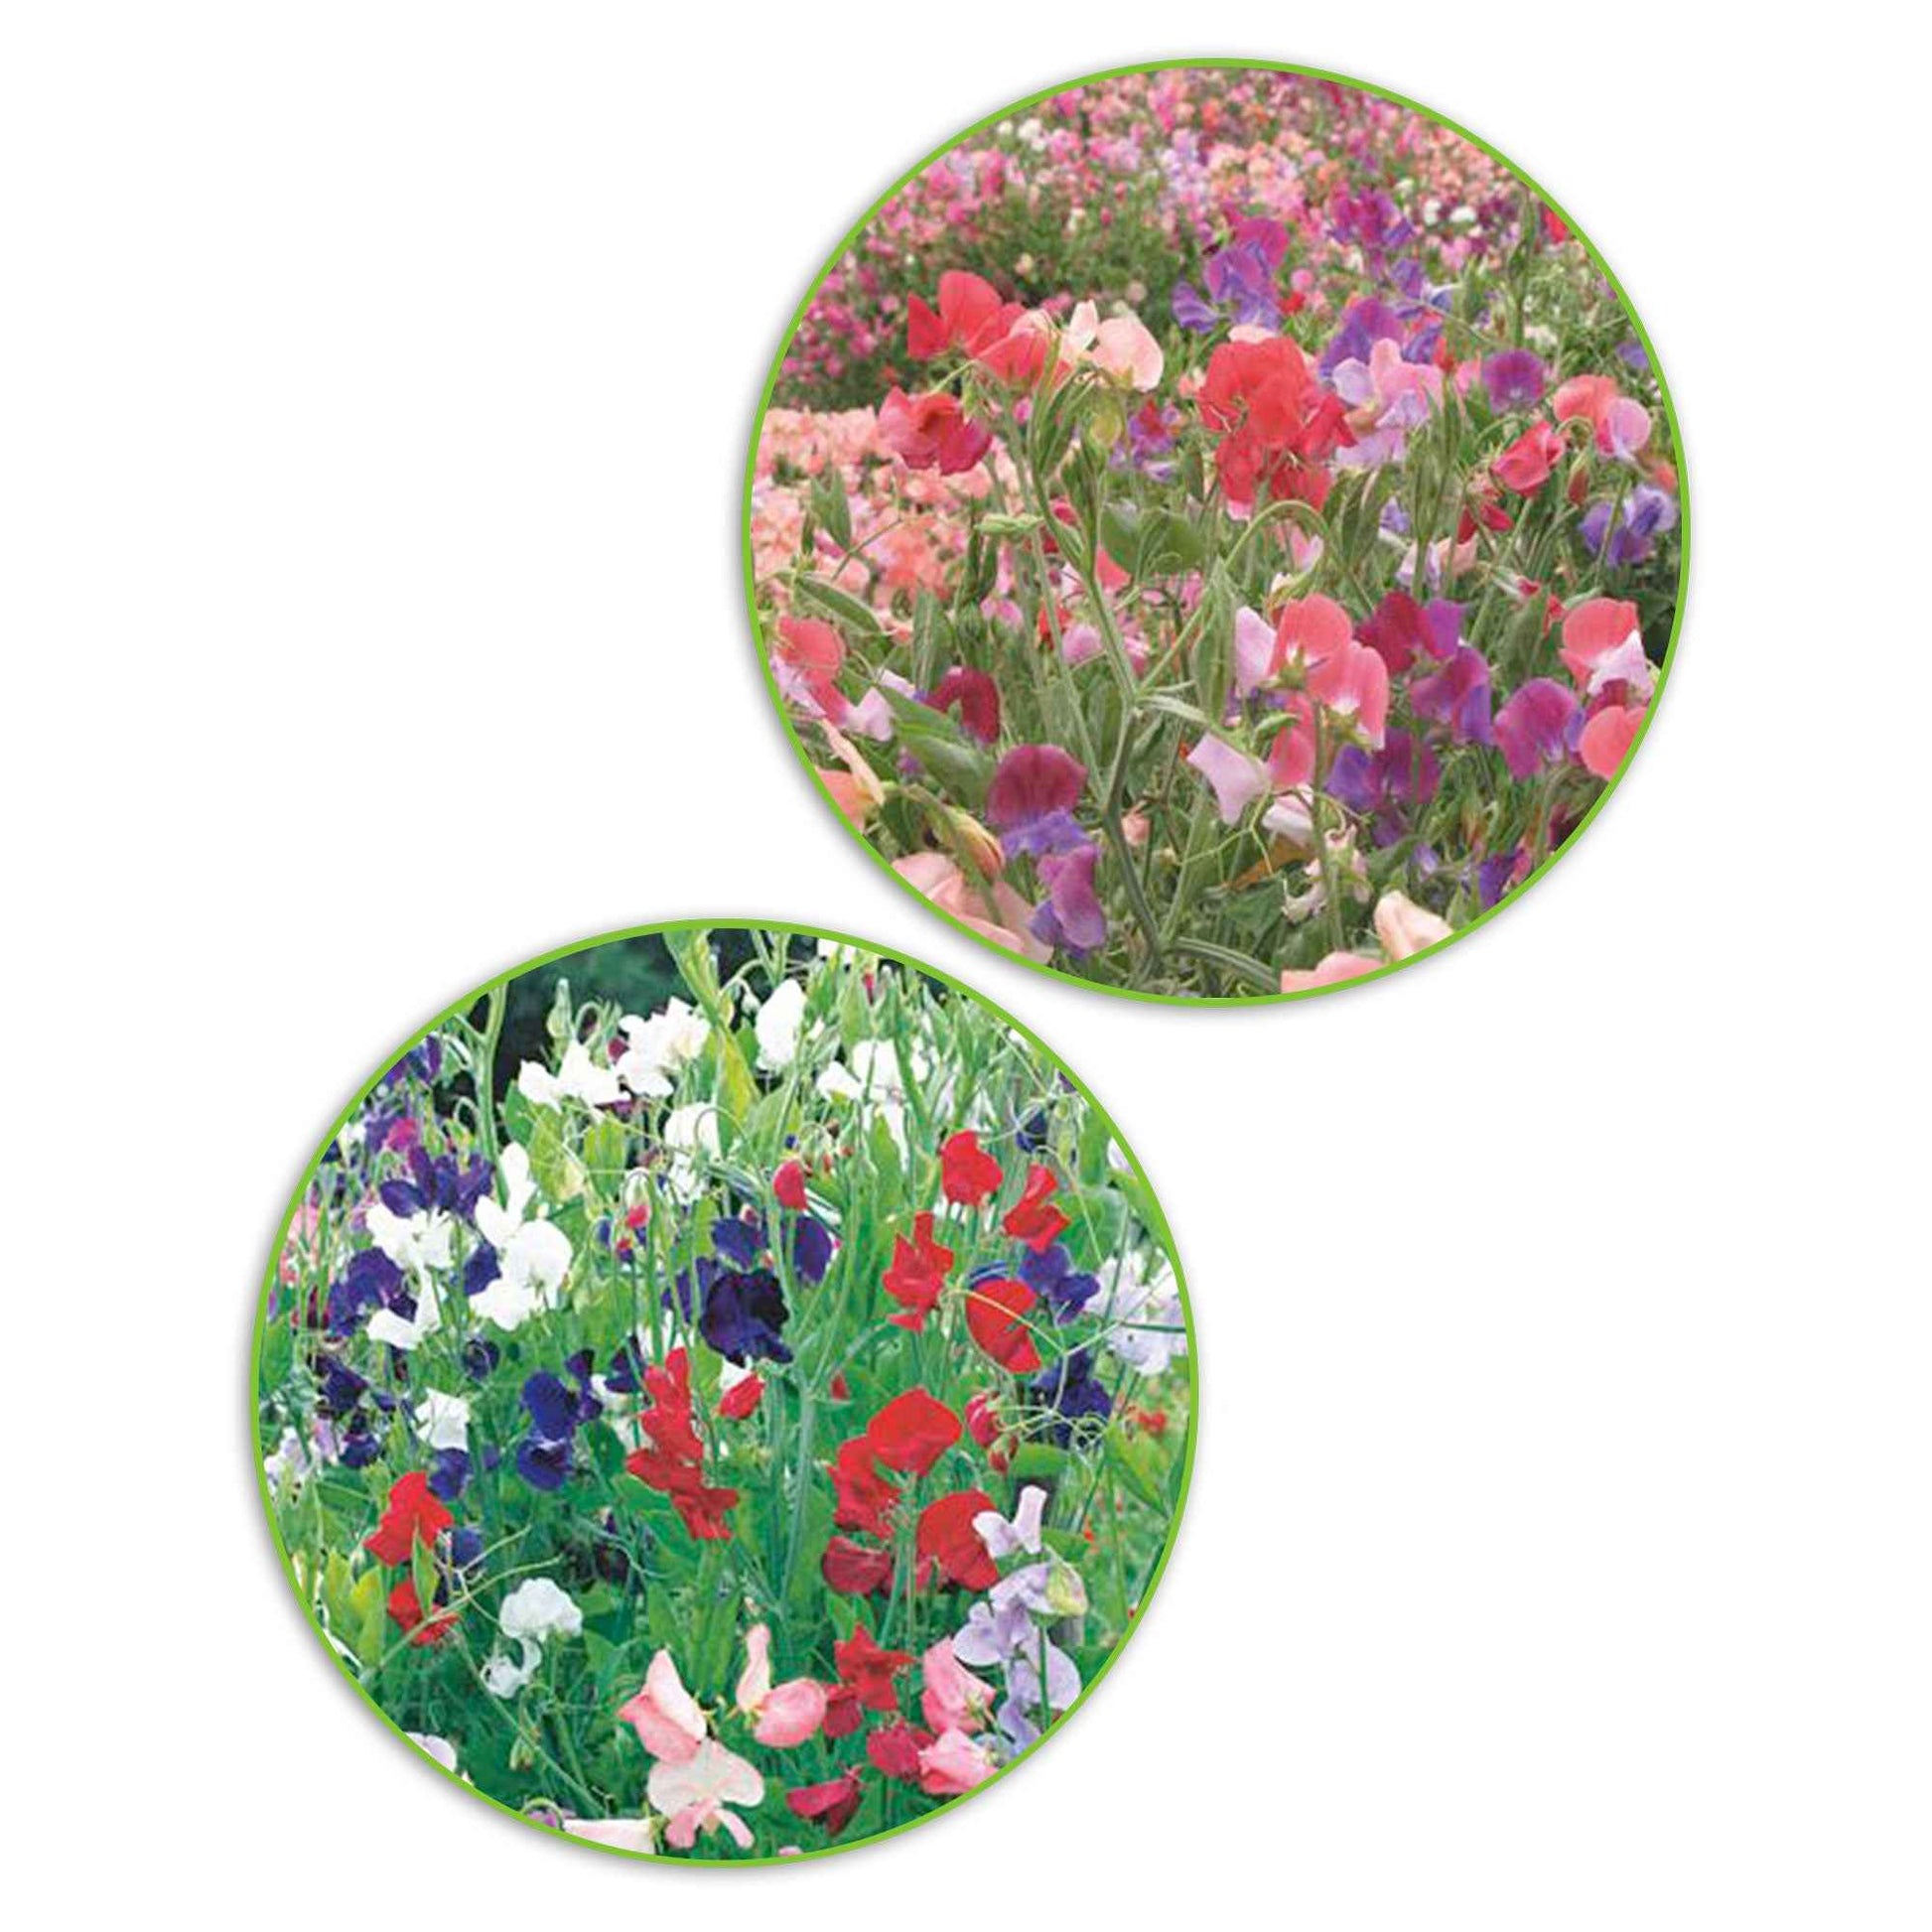 Duft-Wicken-Paket Lathyrus 'Kräftige Farben' - Biologisch 3 m² - Blumensamen - Gartenpflanzen